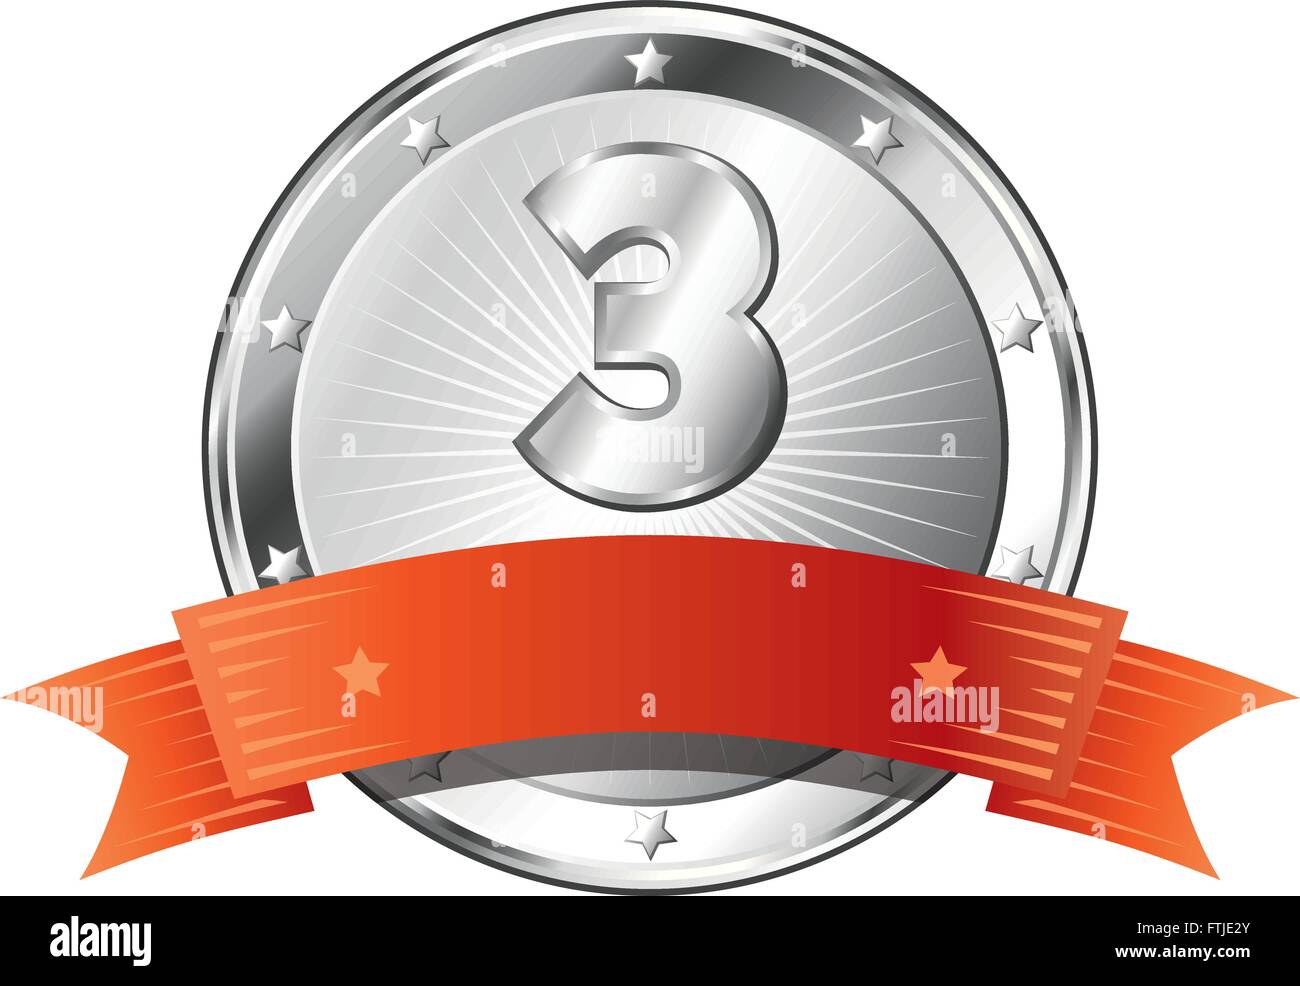 Runde Kreis geformt Metallabzeichen / Gütesiegel in Silber Aussehen mit einem roten Band und die Nummer drei. Stock Vektor